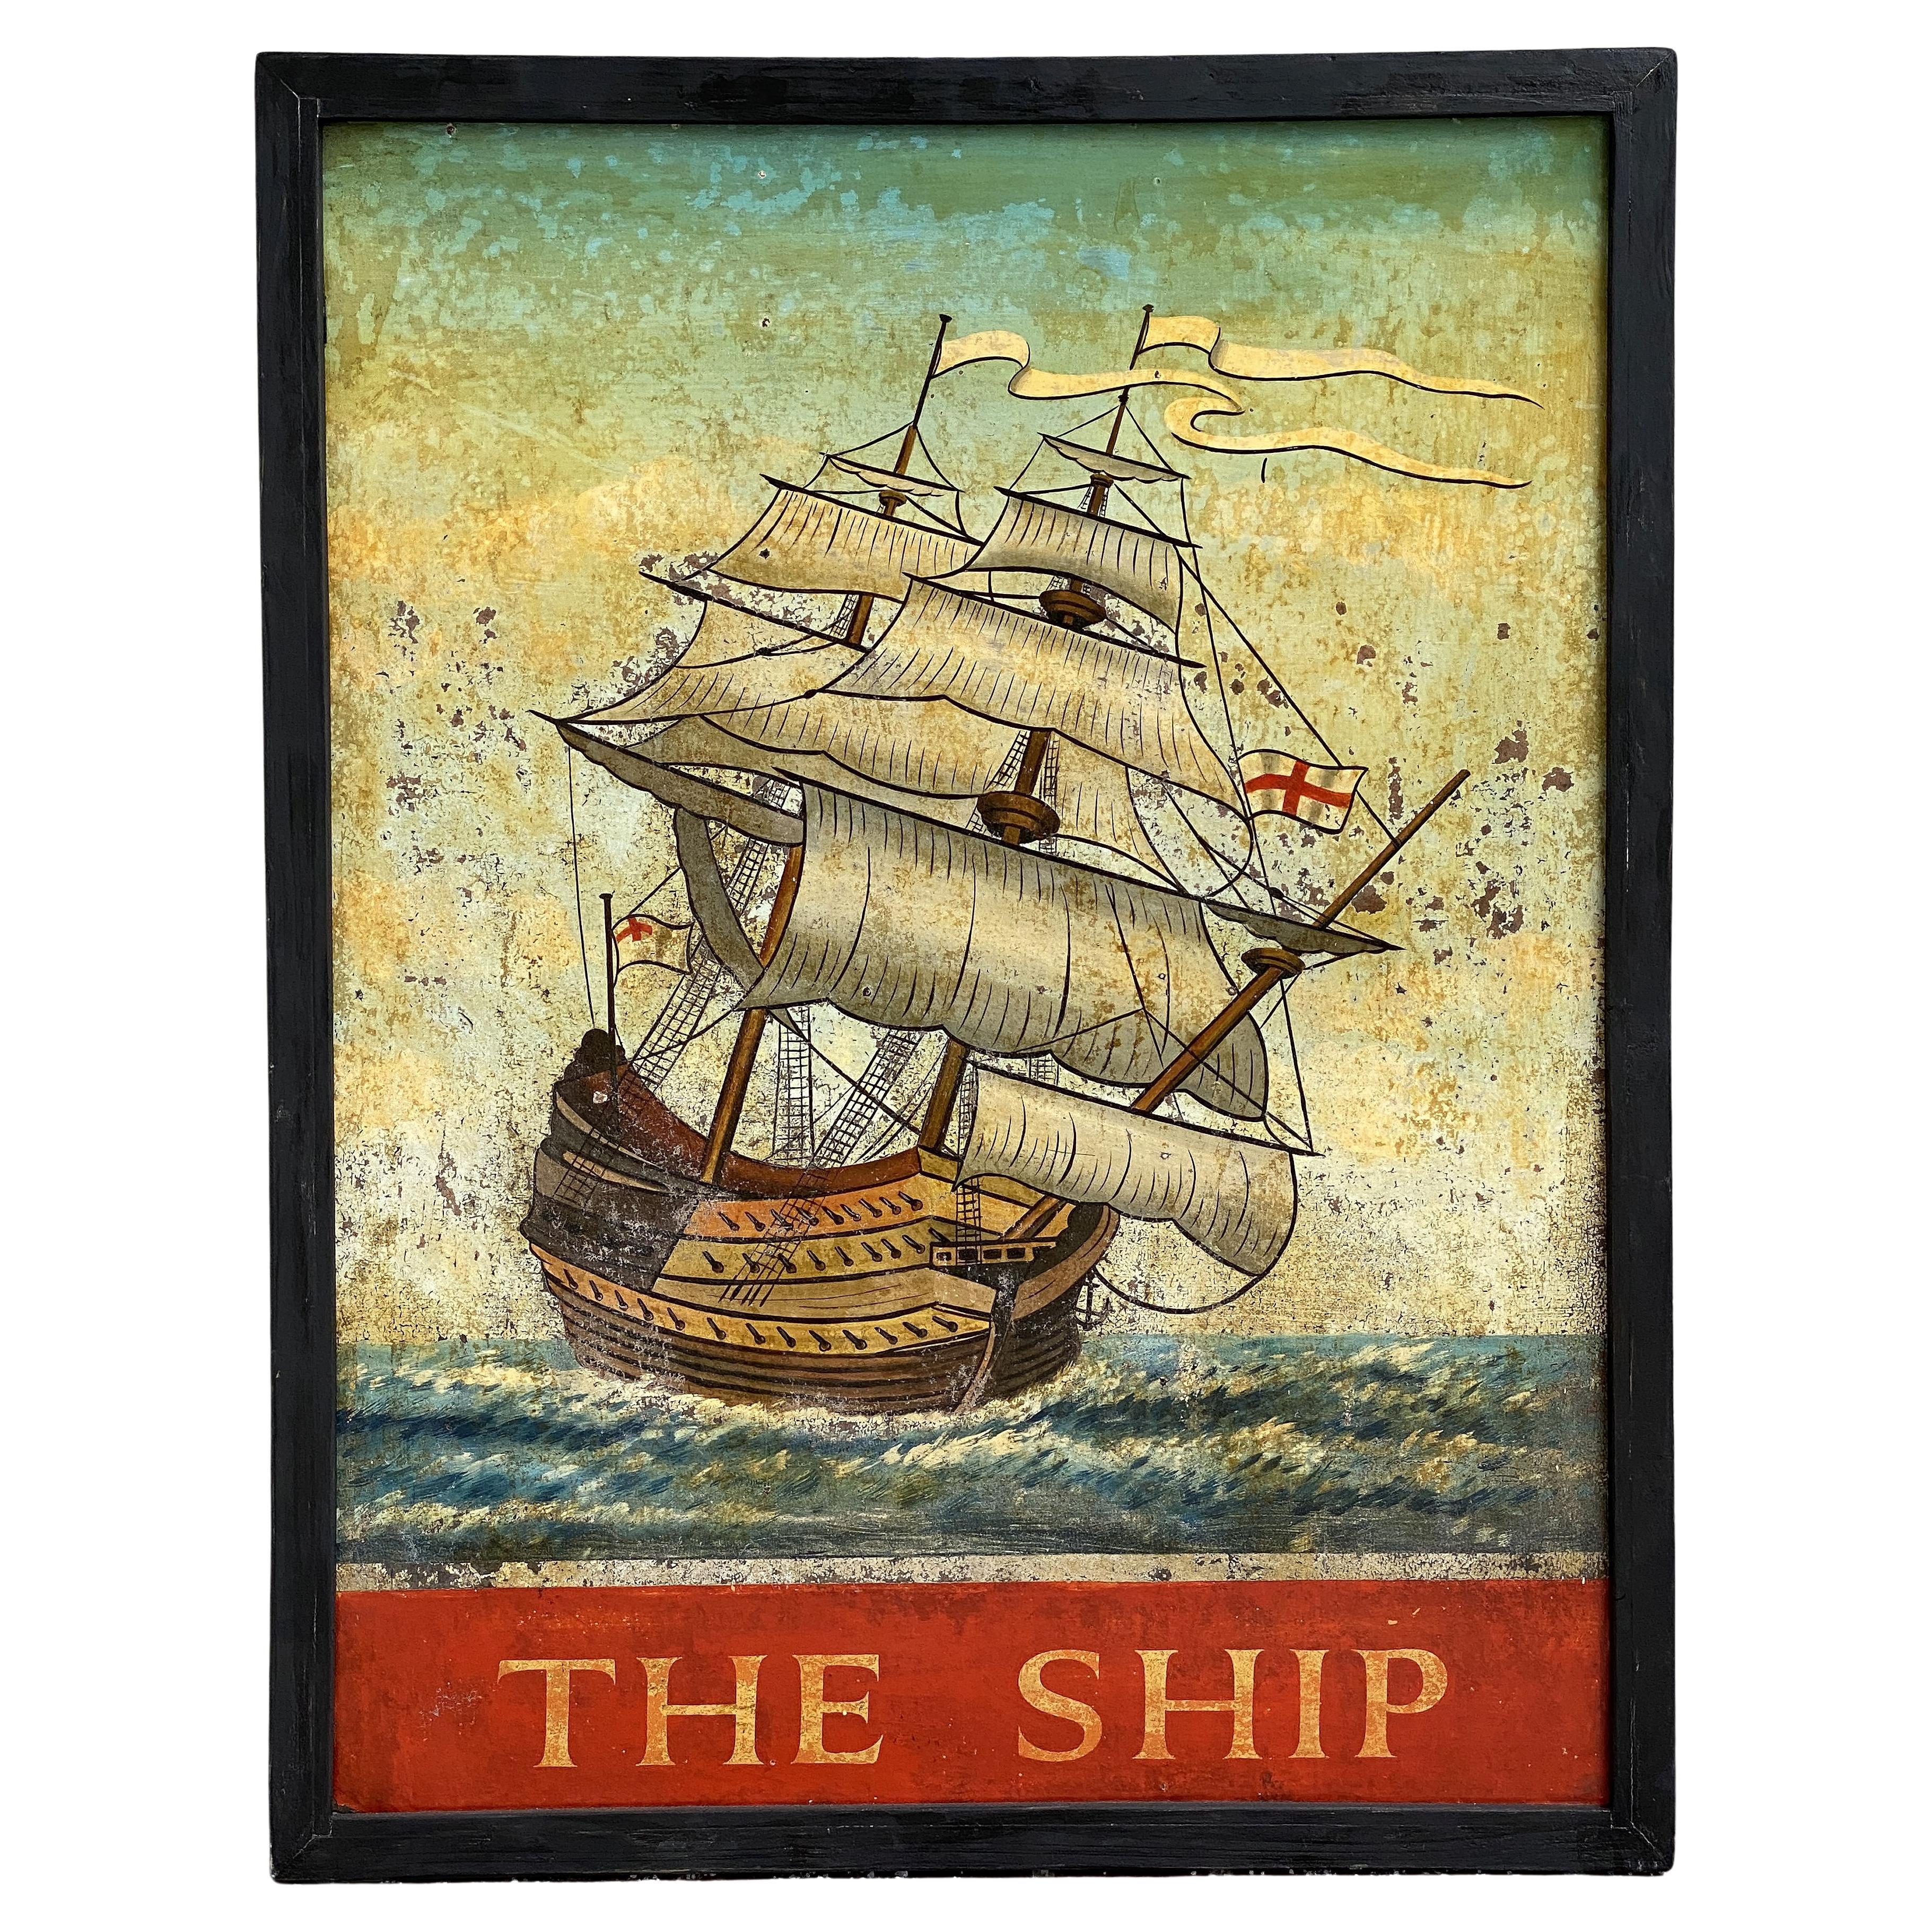 Signe de pub anglaise, « The Ship »